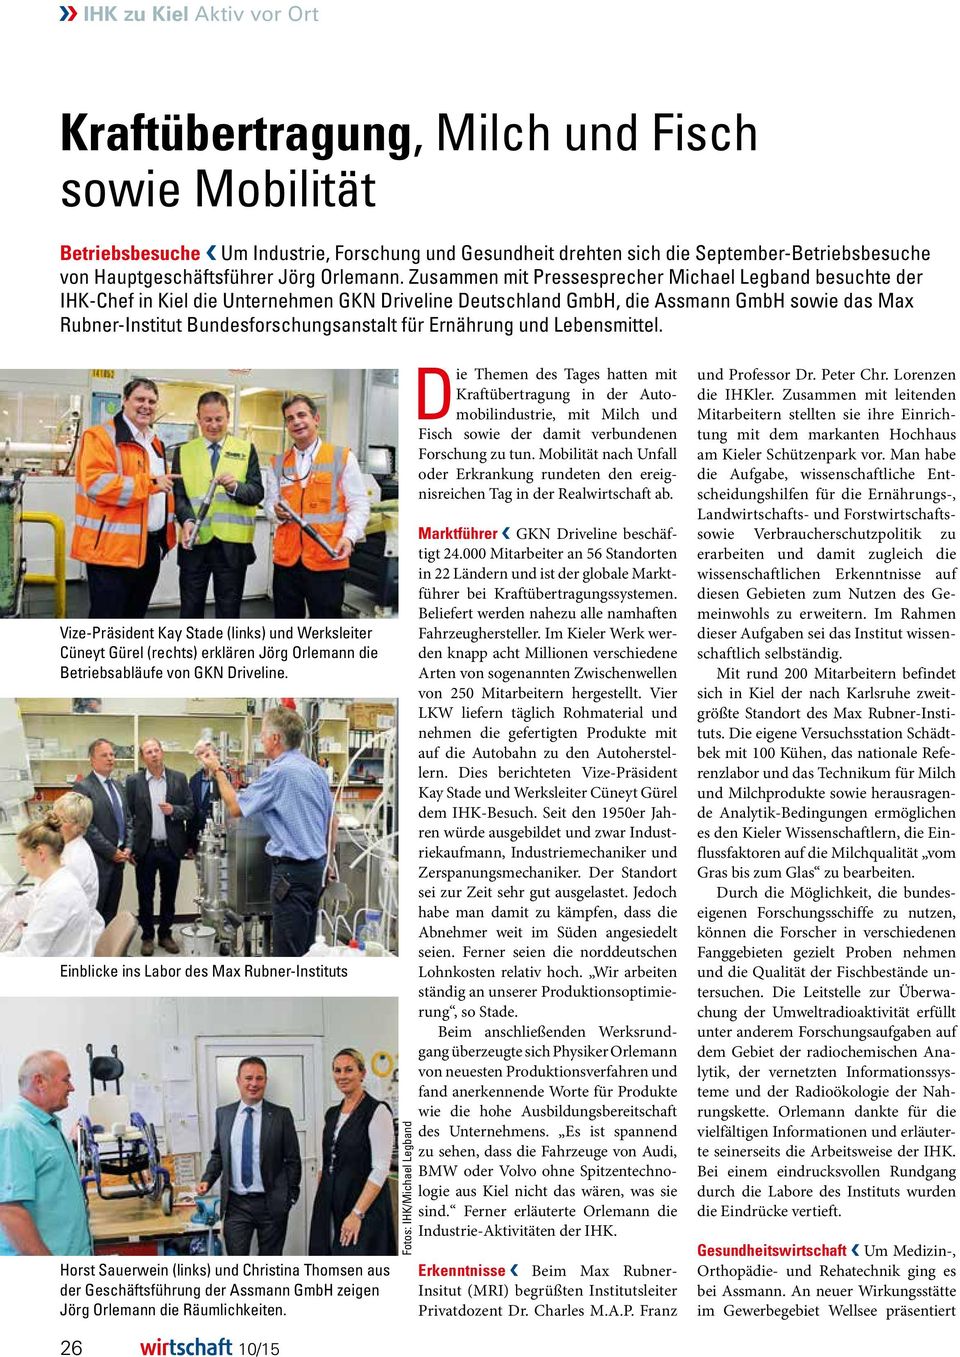 Zusammen mit Pressesprecher Michael Legband besuchte der IHK-Chef in Kiel die Unternehmen GKN Driveline Deutschland GmbH, die Assmann GmbH sowie das Max Rubner-Institut Bundesforschungsanstalt für